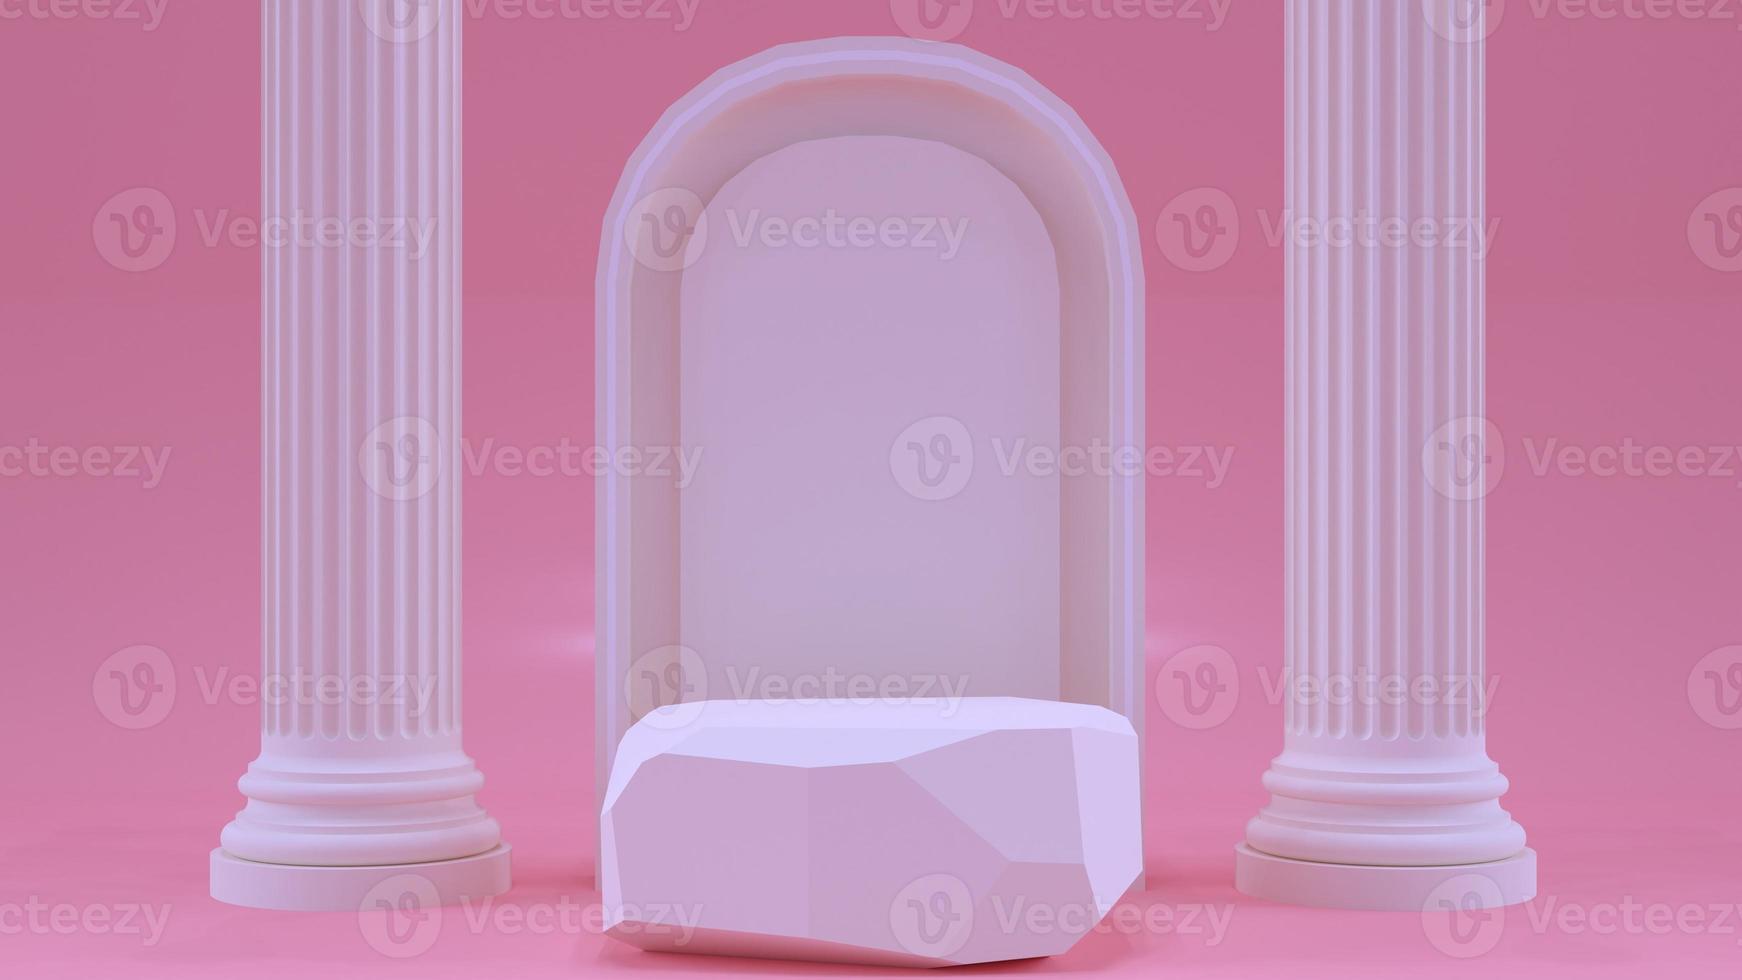 die produktanzeige steht auf rosa hintergrund mit kreis- und säulenhintergrund foto